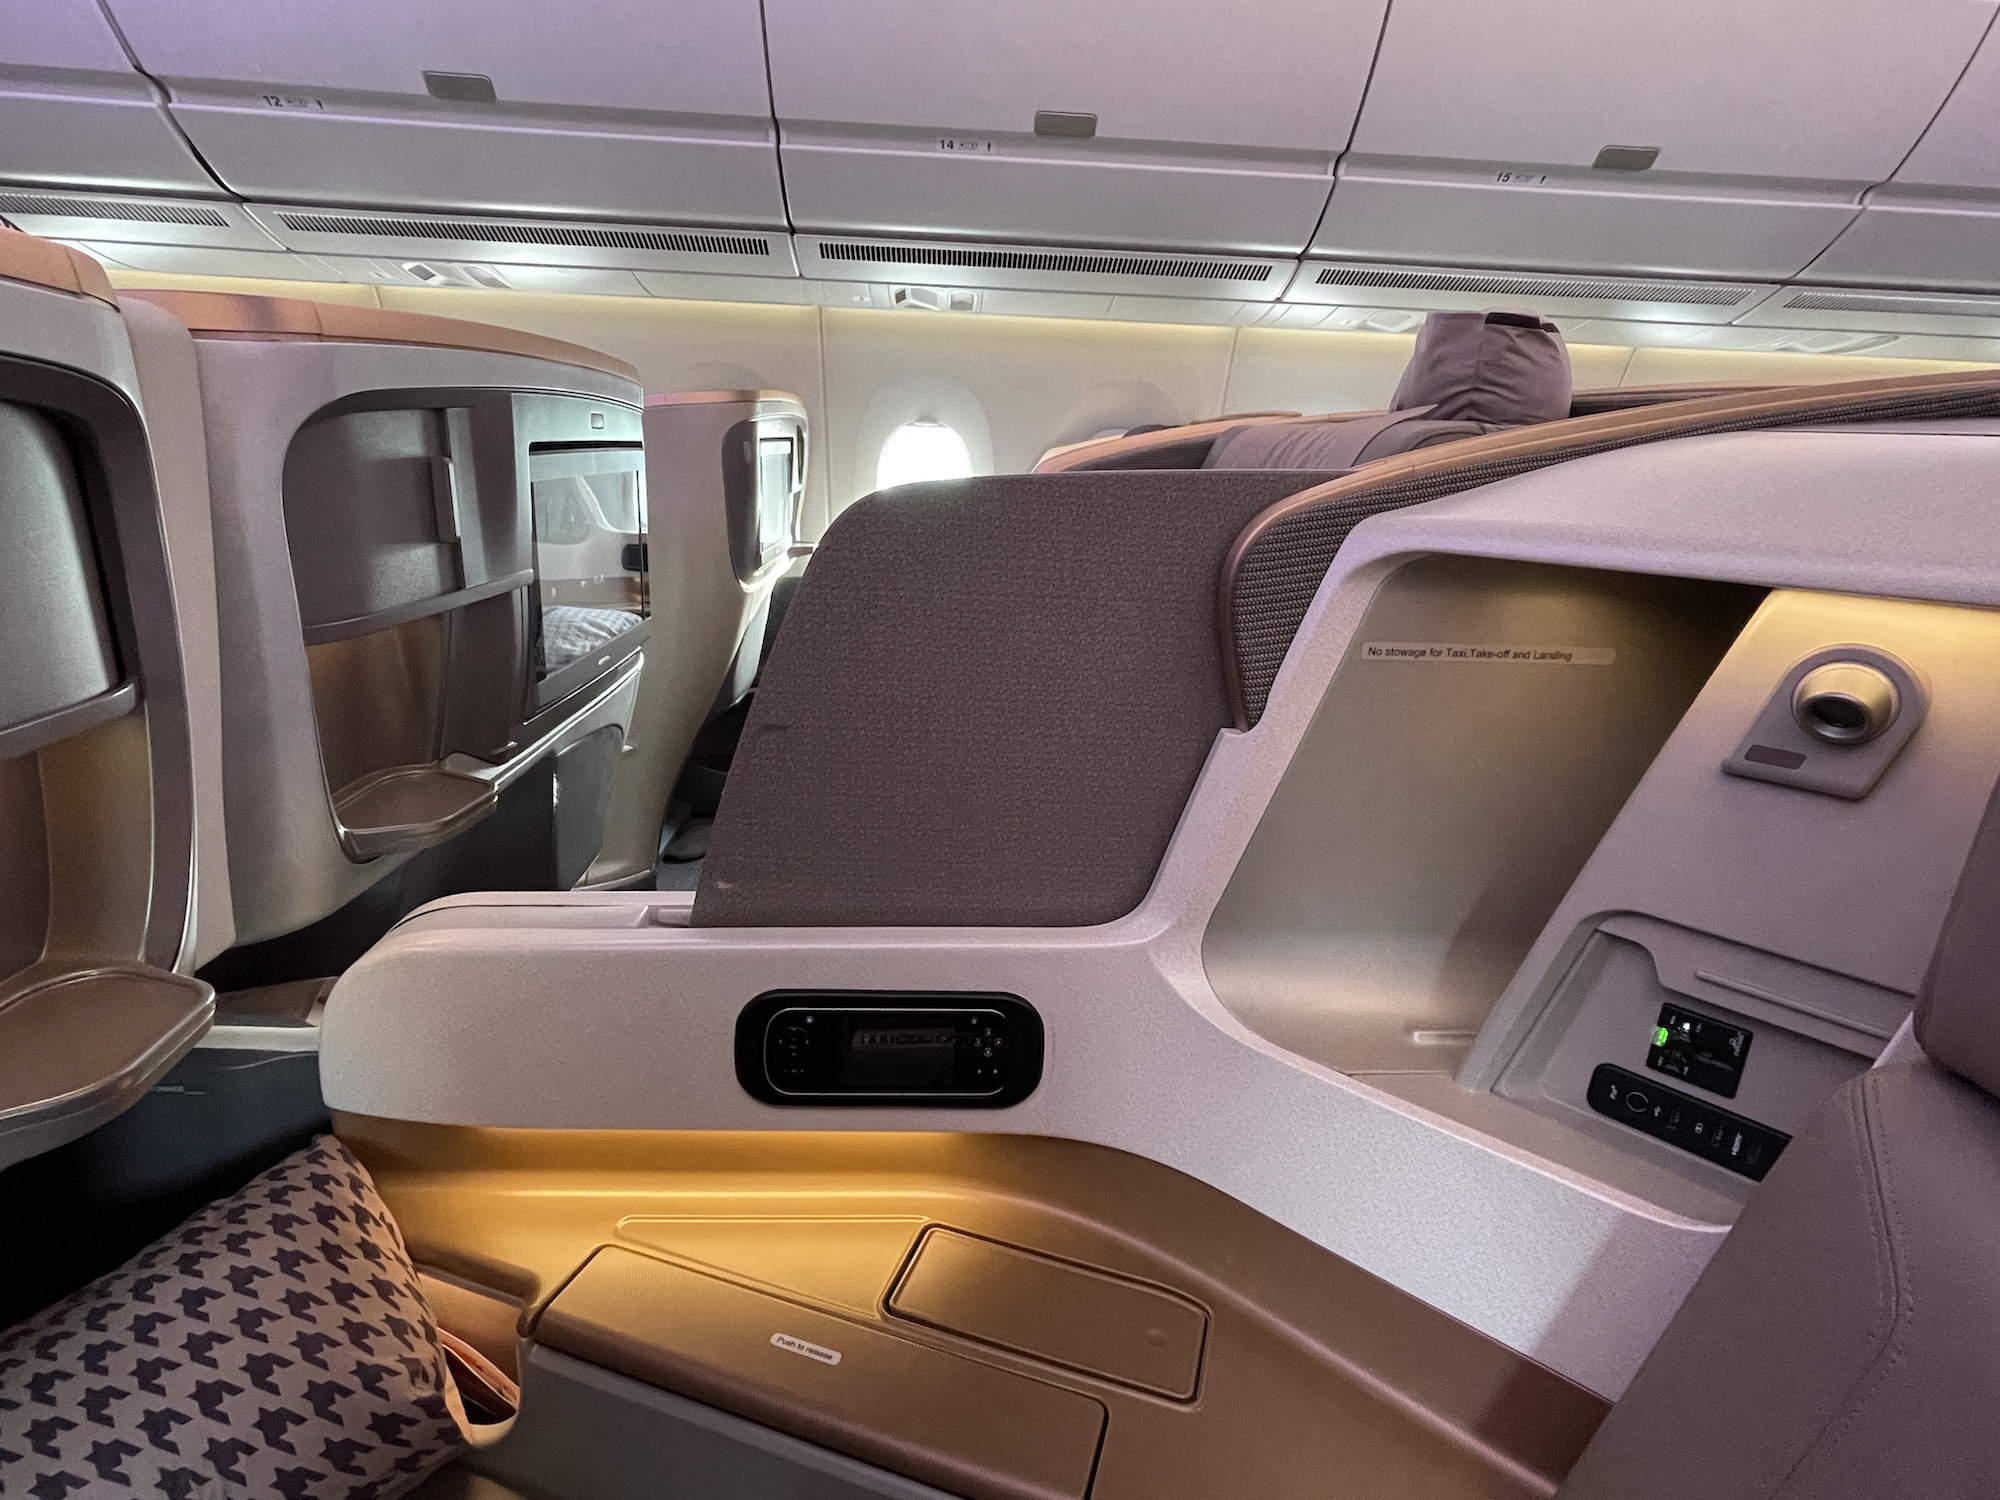 מחיצה נגללת בין המושבים במחלקת עסקים במטוס A350 של סינגפור איירליינס